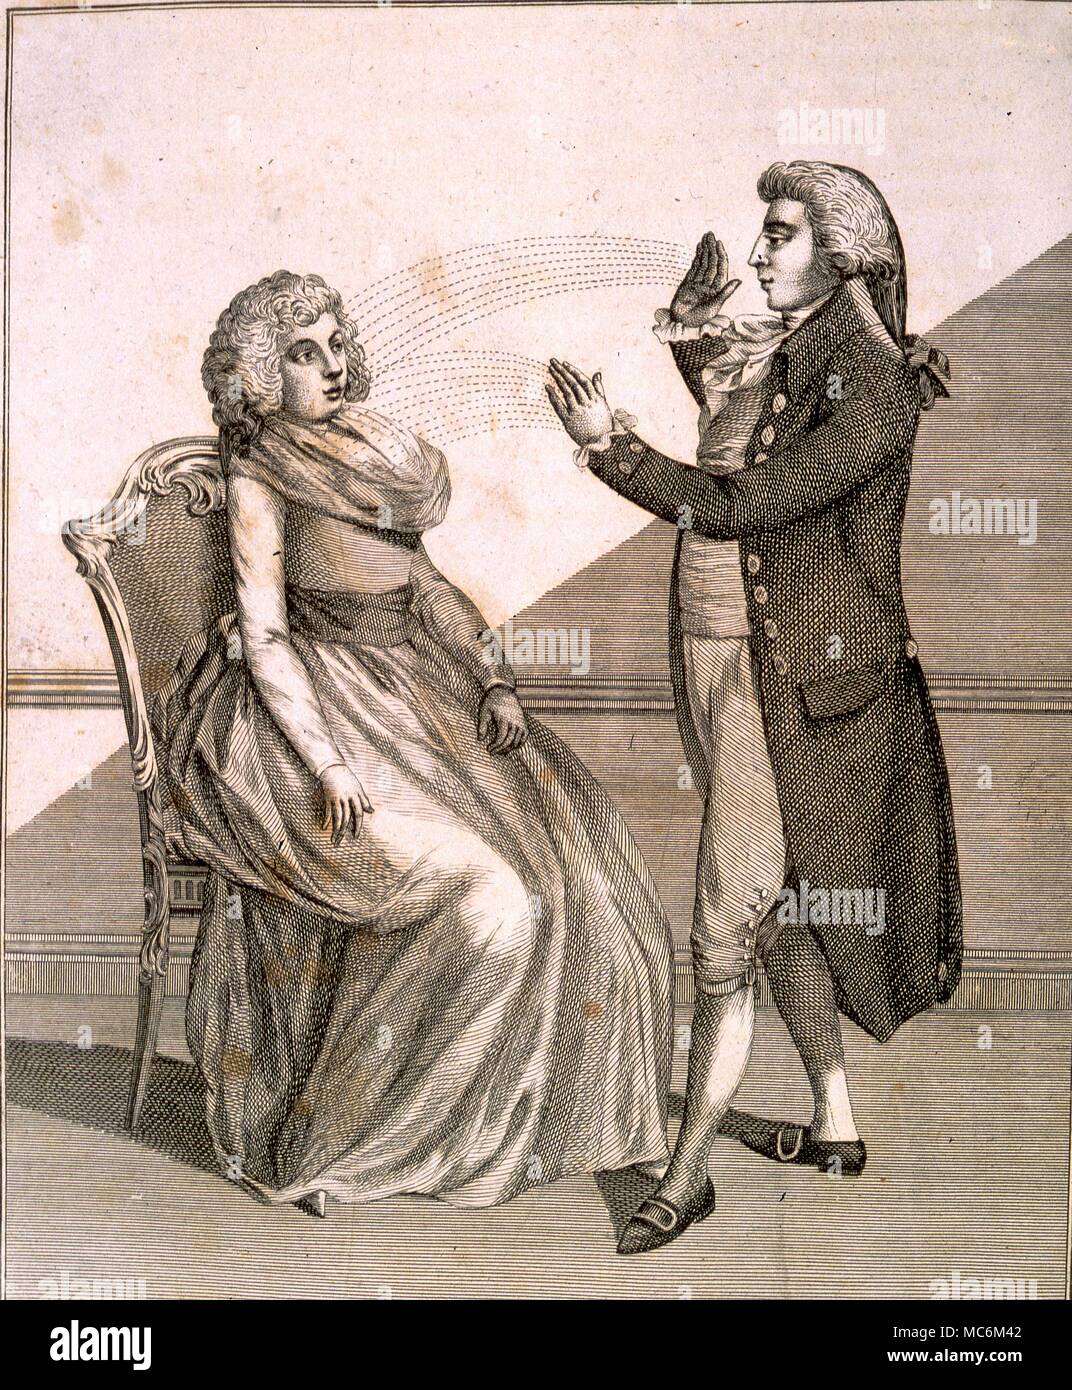 Ipnosi - Mesmerism tardo XVIII secolo engraviing di mesmerist influenzare una donna con mano passa. Da Ebenezer Sibly è una chiave per la fisica e le scienze occulte 1794 Foto Stock